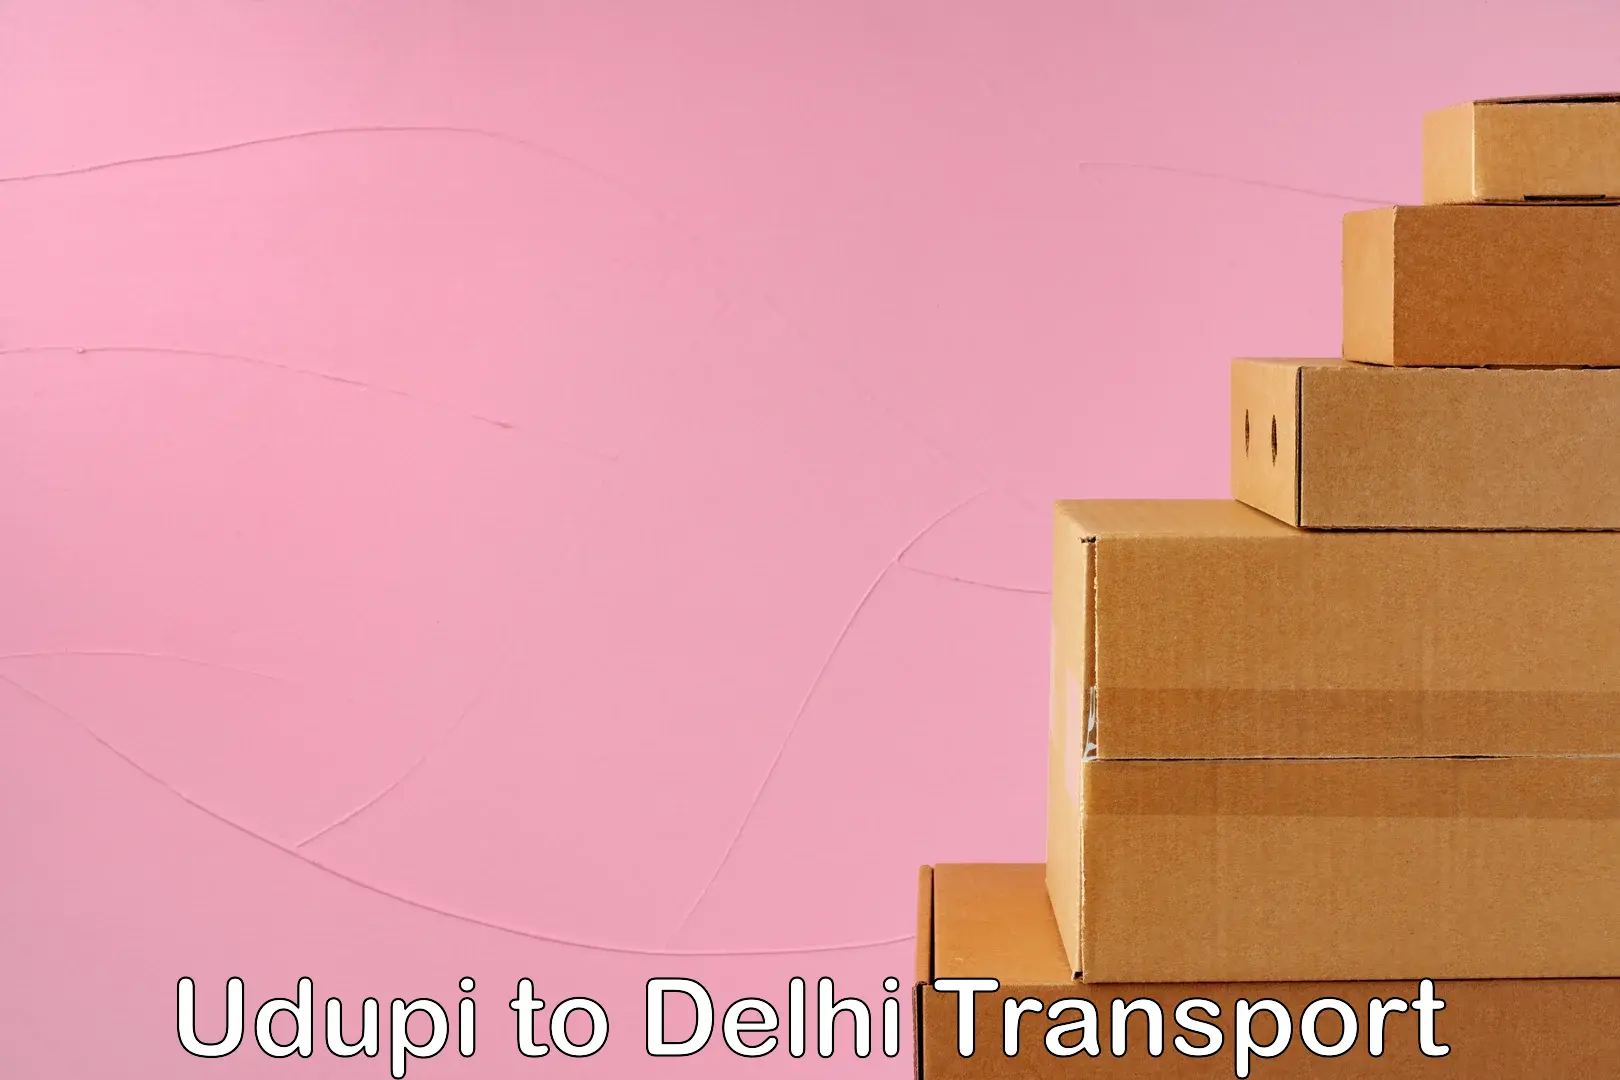 Online transport service Udupi to Delhi